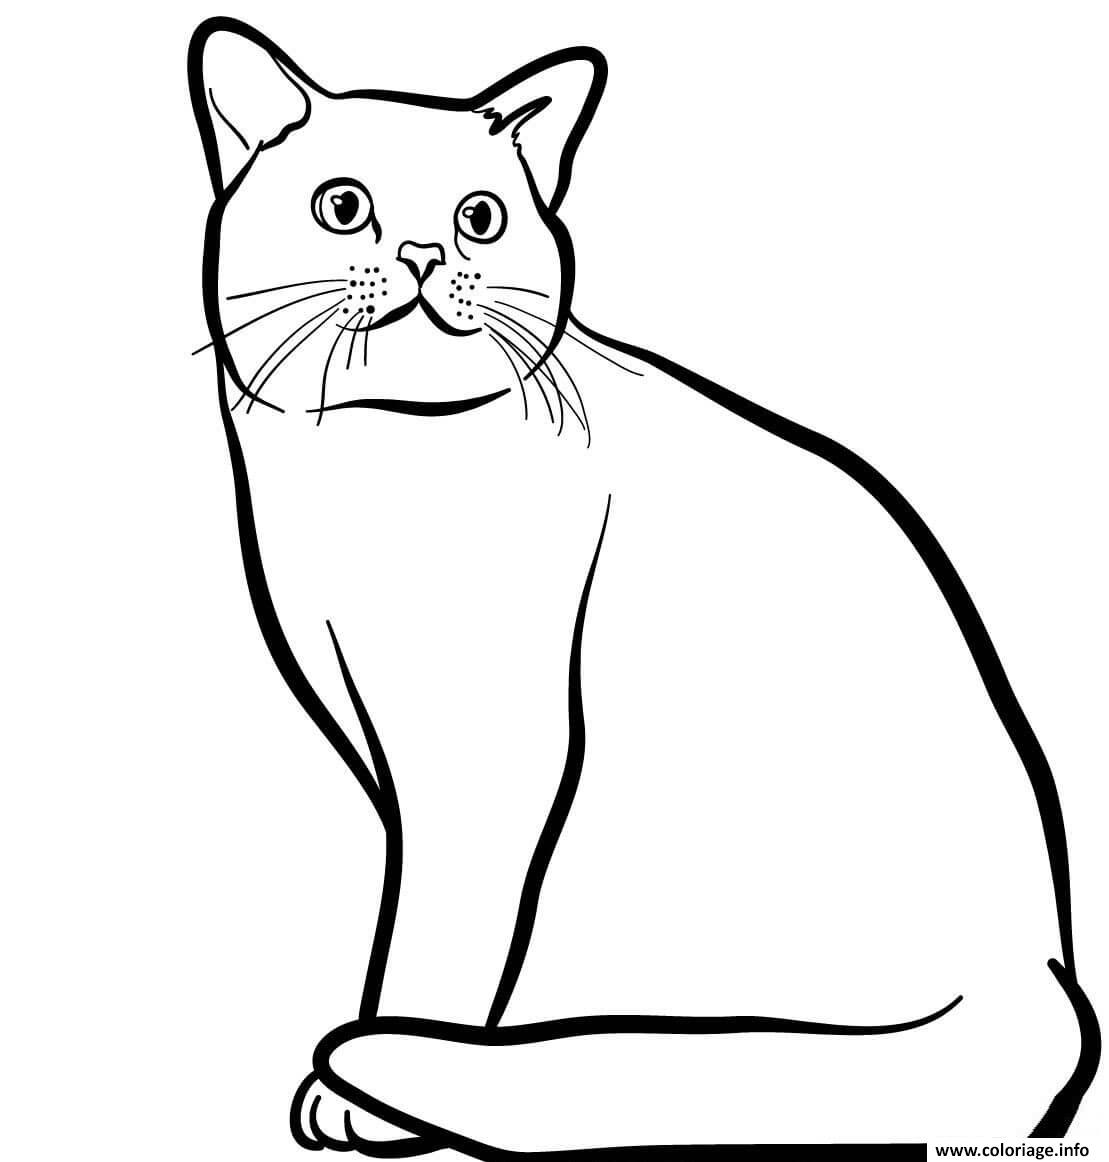 Dessin Poil court et lustre le chat american shorthair est originaire des Etats Unis Coloriage Gratuit à Imprimer